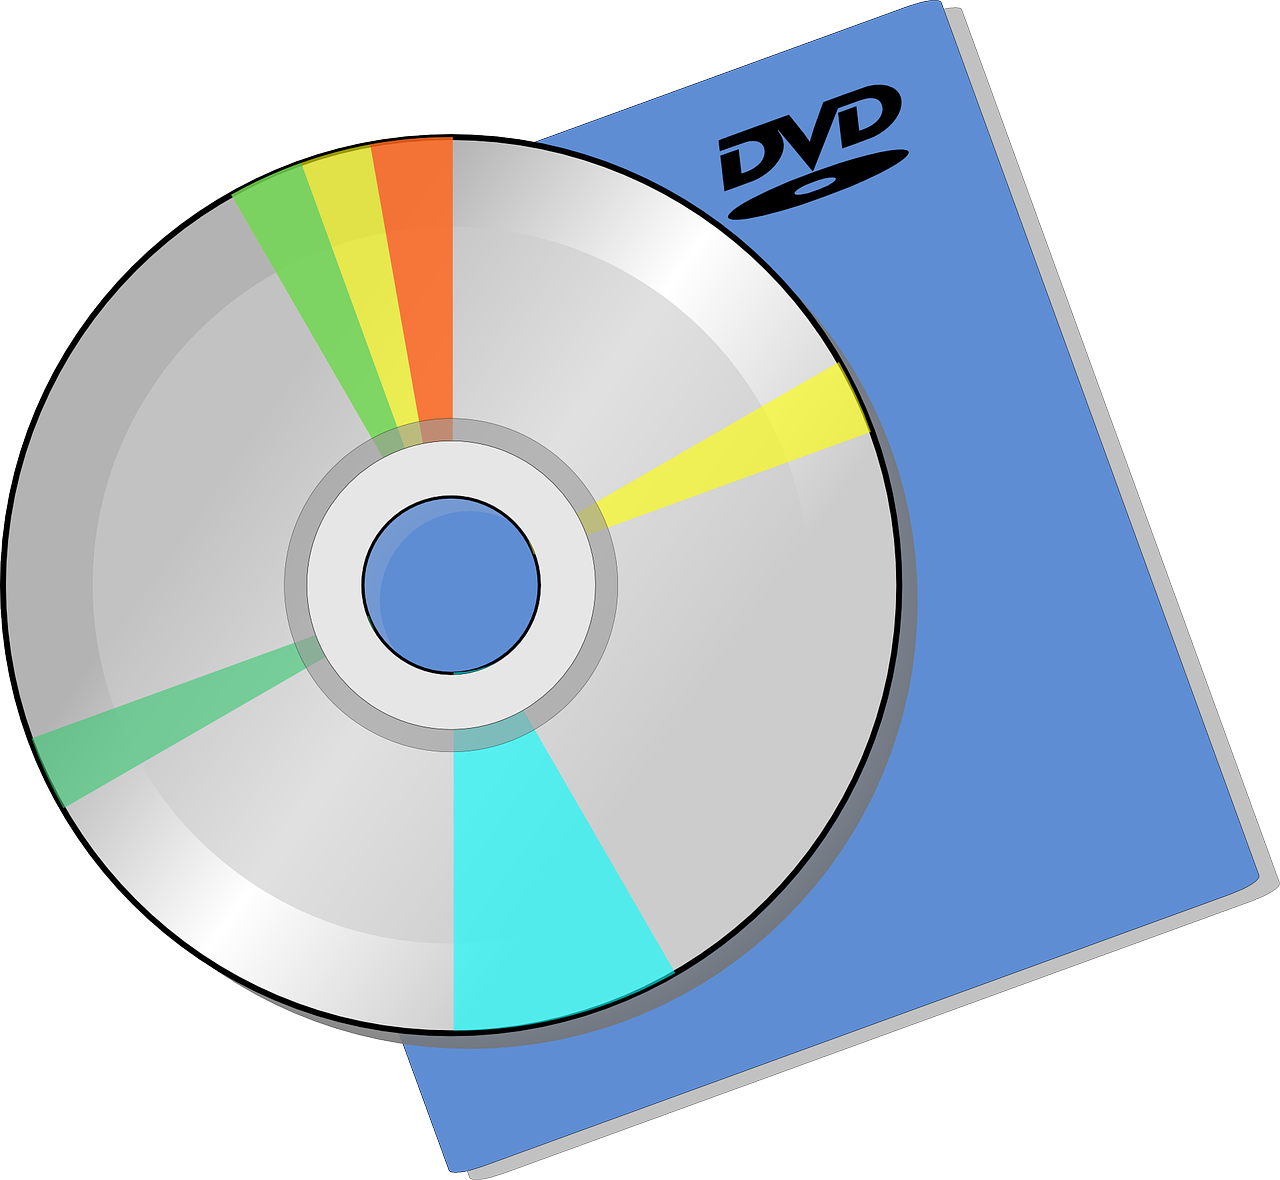 C cd y y. CD DVD диски. Компьютерный диск. Оптический диск. Изображение DVD диска.